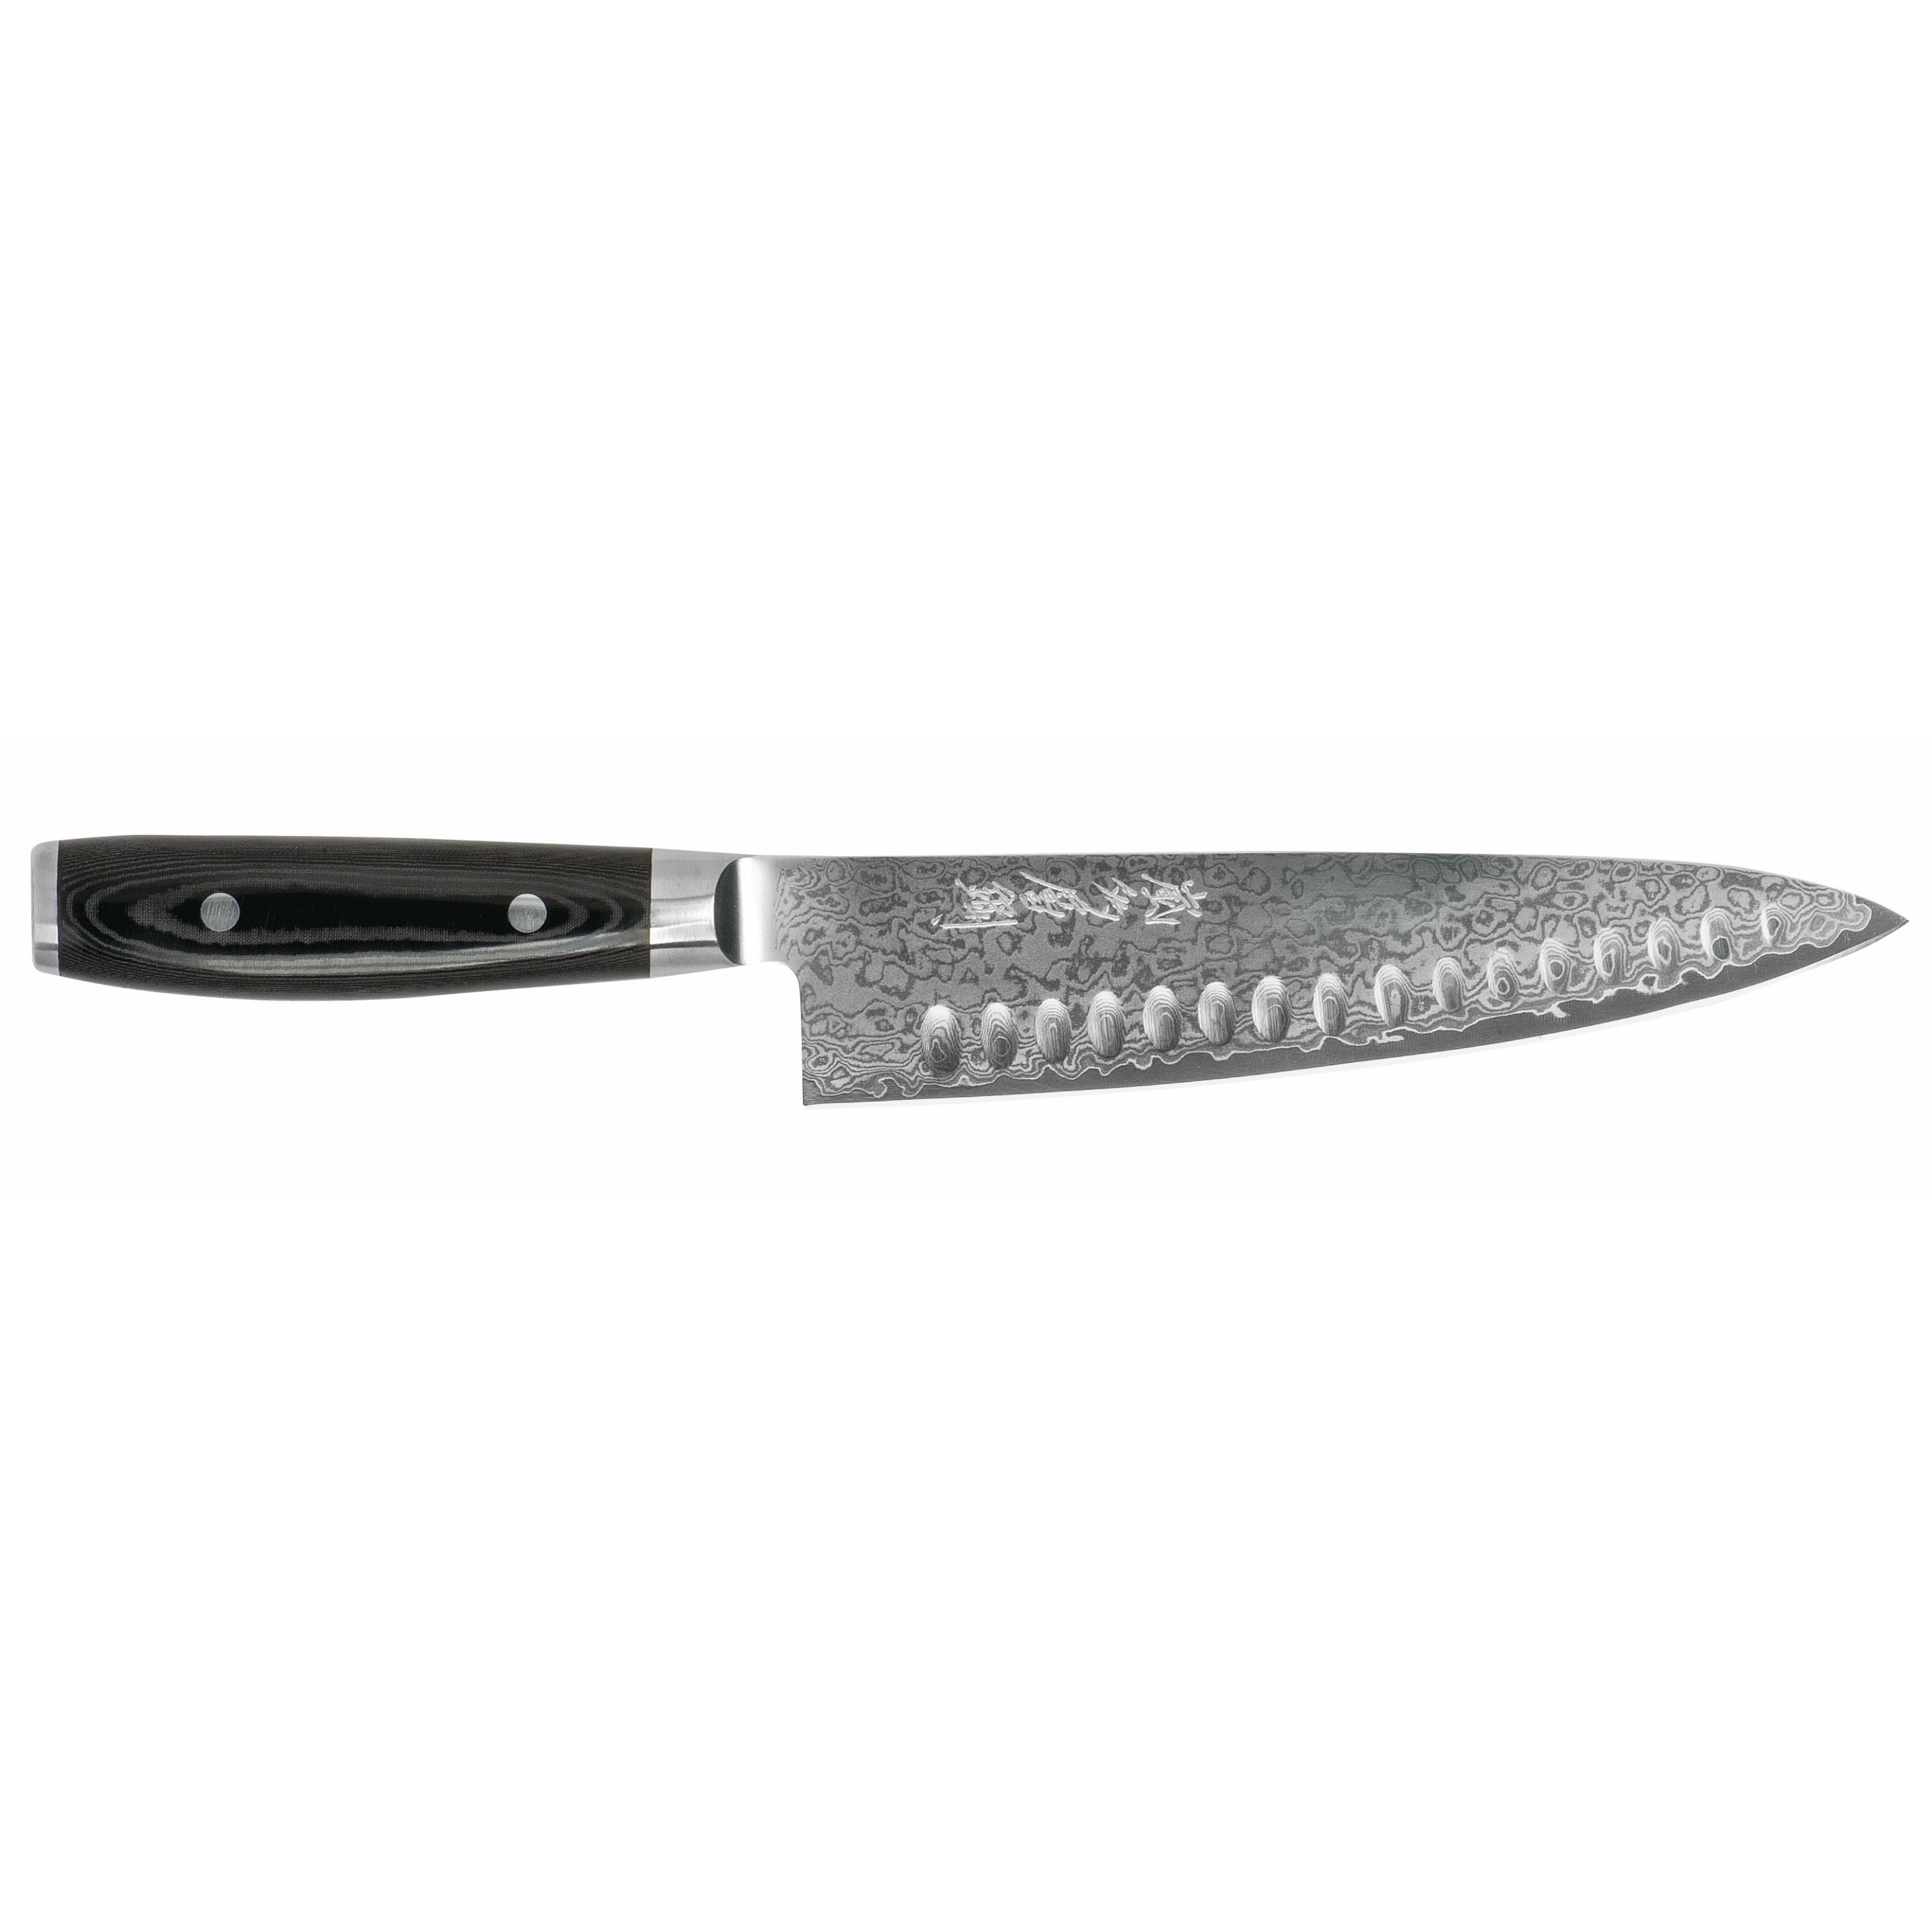 Kuchařský nůž RAN PLUS 20 cm, s výbrusem, černá, Yaxell